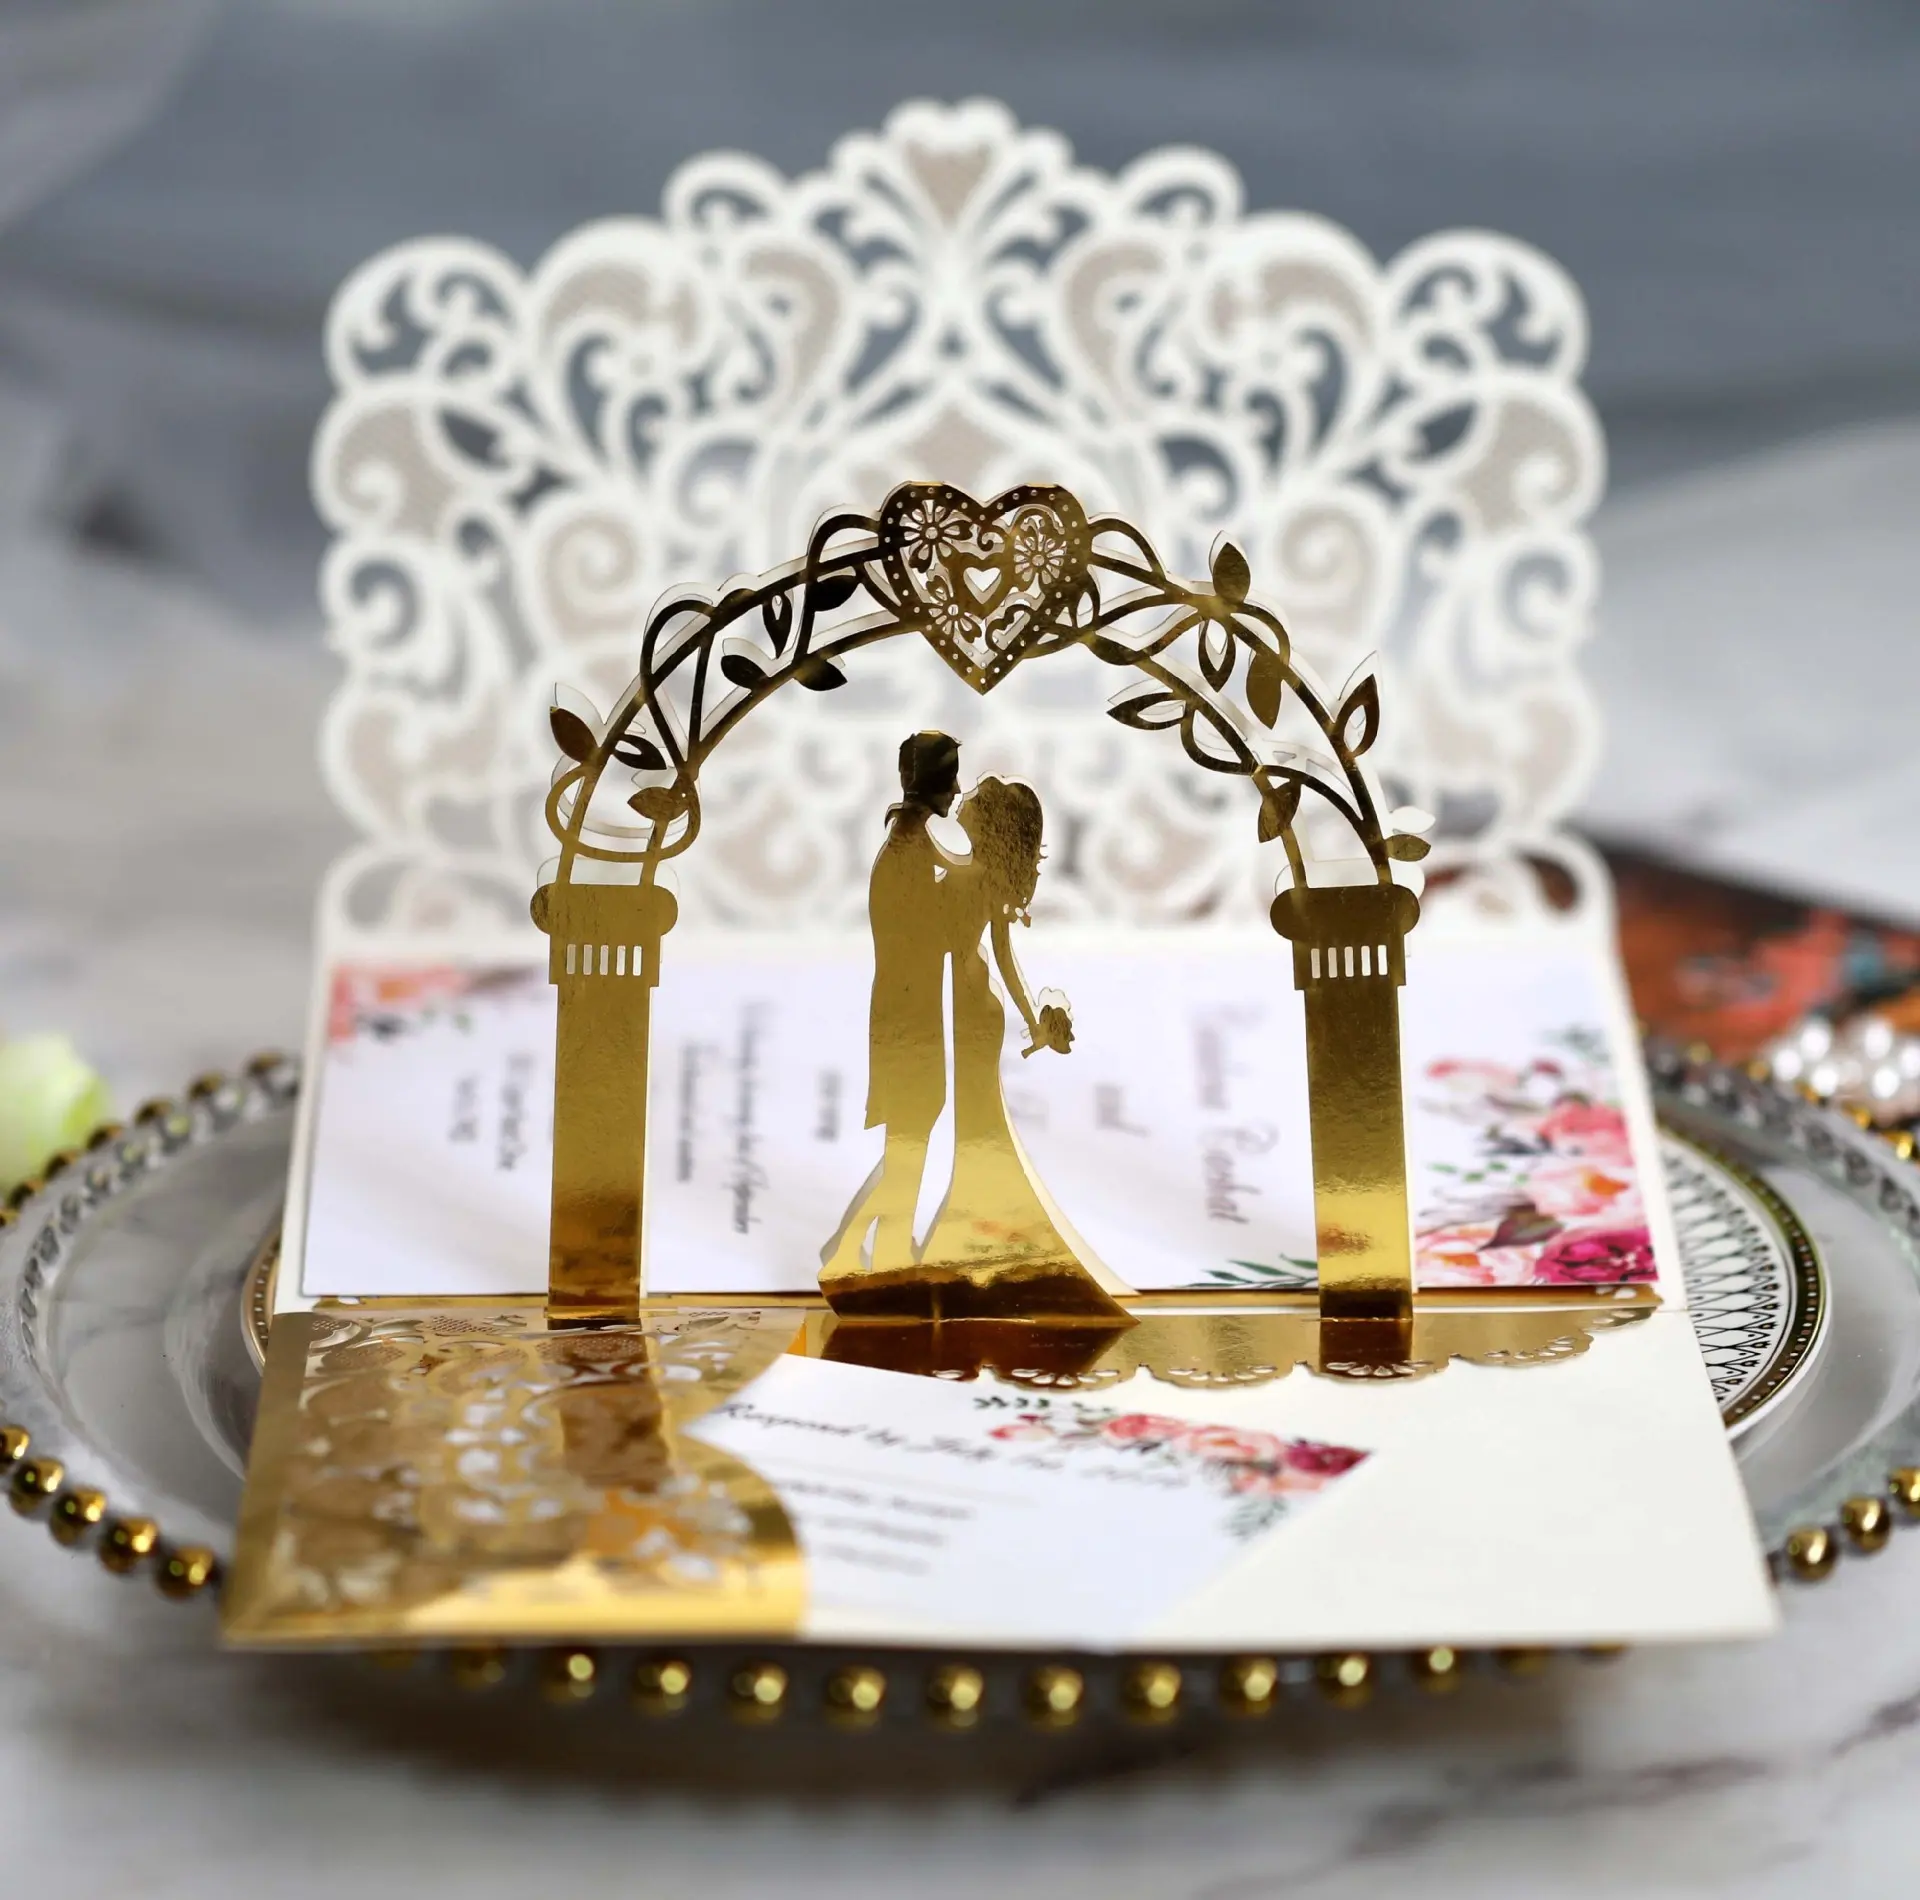 Tarjeta de felicitación tridimensional de boda hueca de alta calidad invitación de amor tarjeta de invitación de compromiso